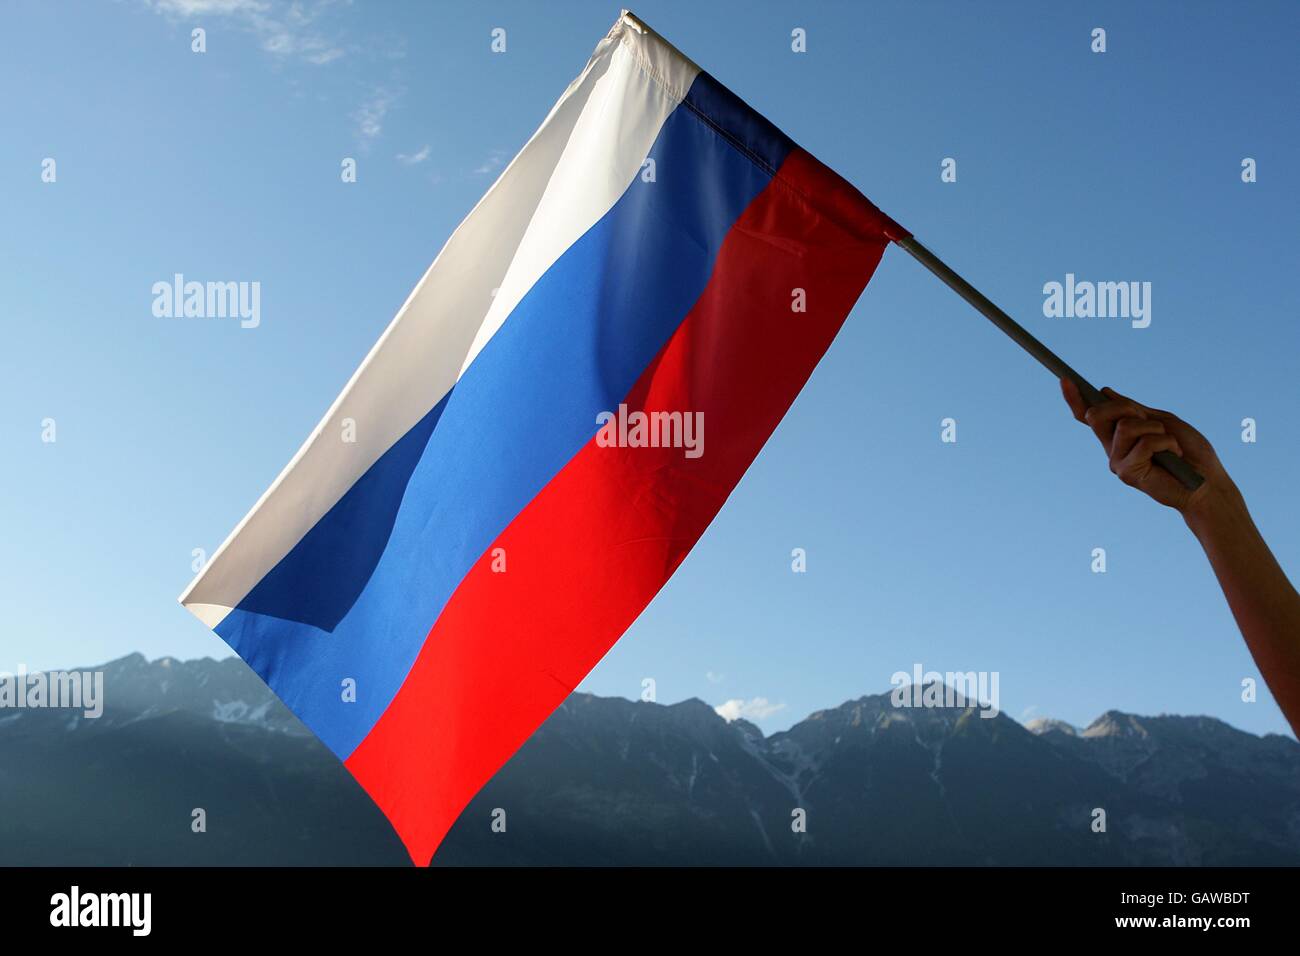 Una bandiera russa è sventolata davanti allo sfondo delle montagne del Tirolo, fuori dallo stadio prima del calcio d'inizio. Foto Stock